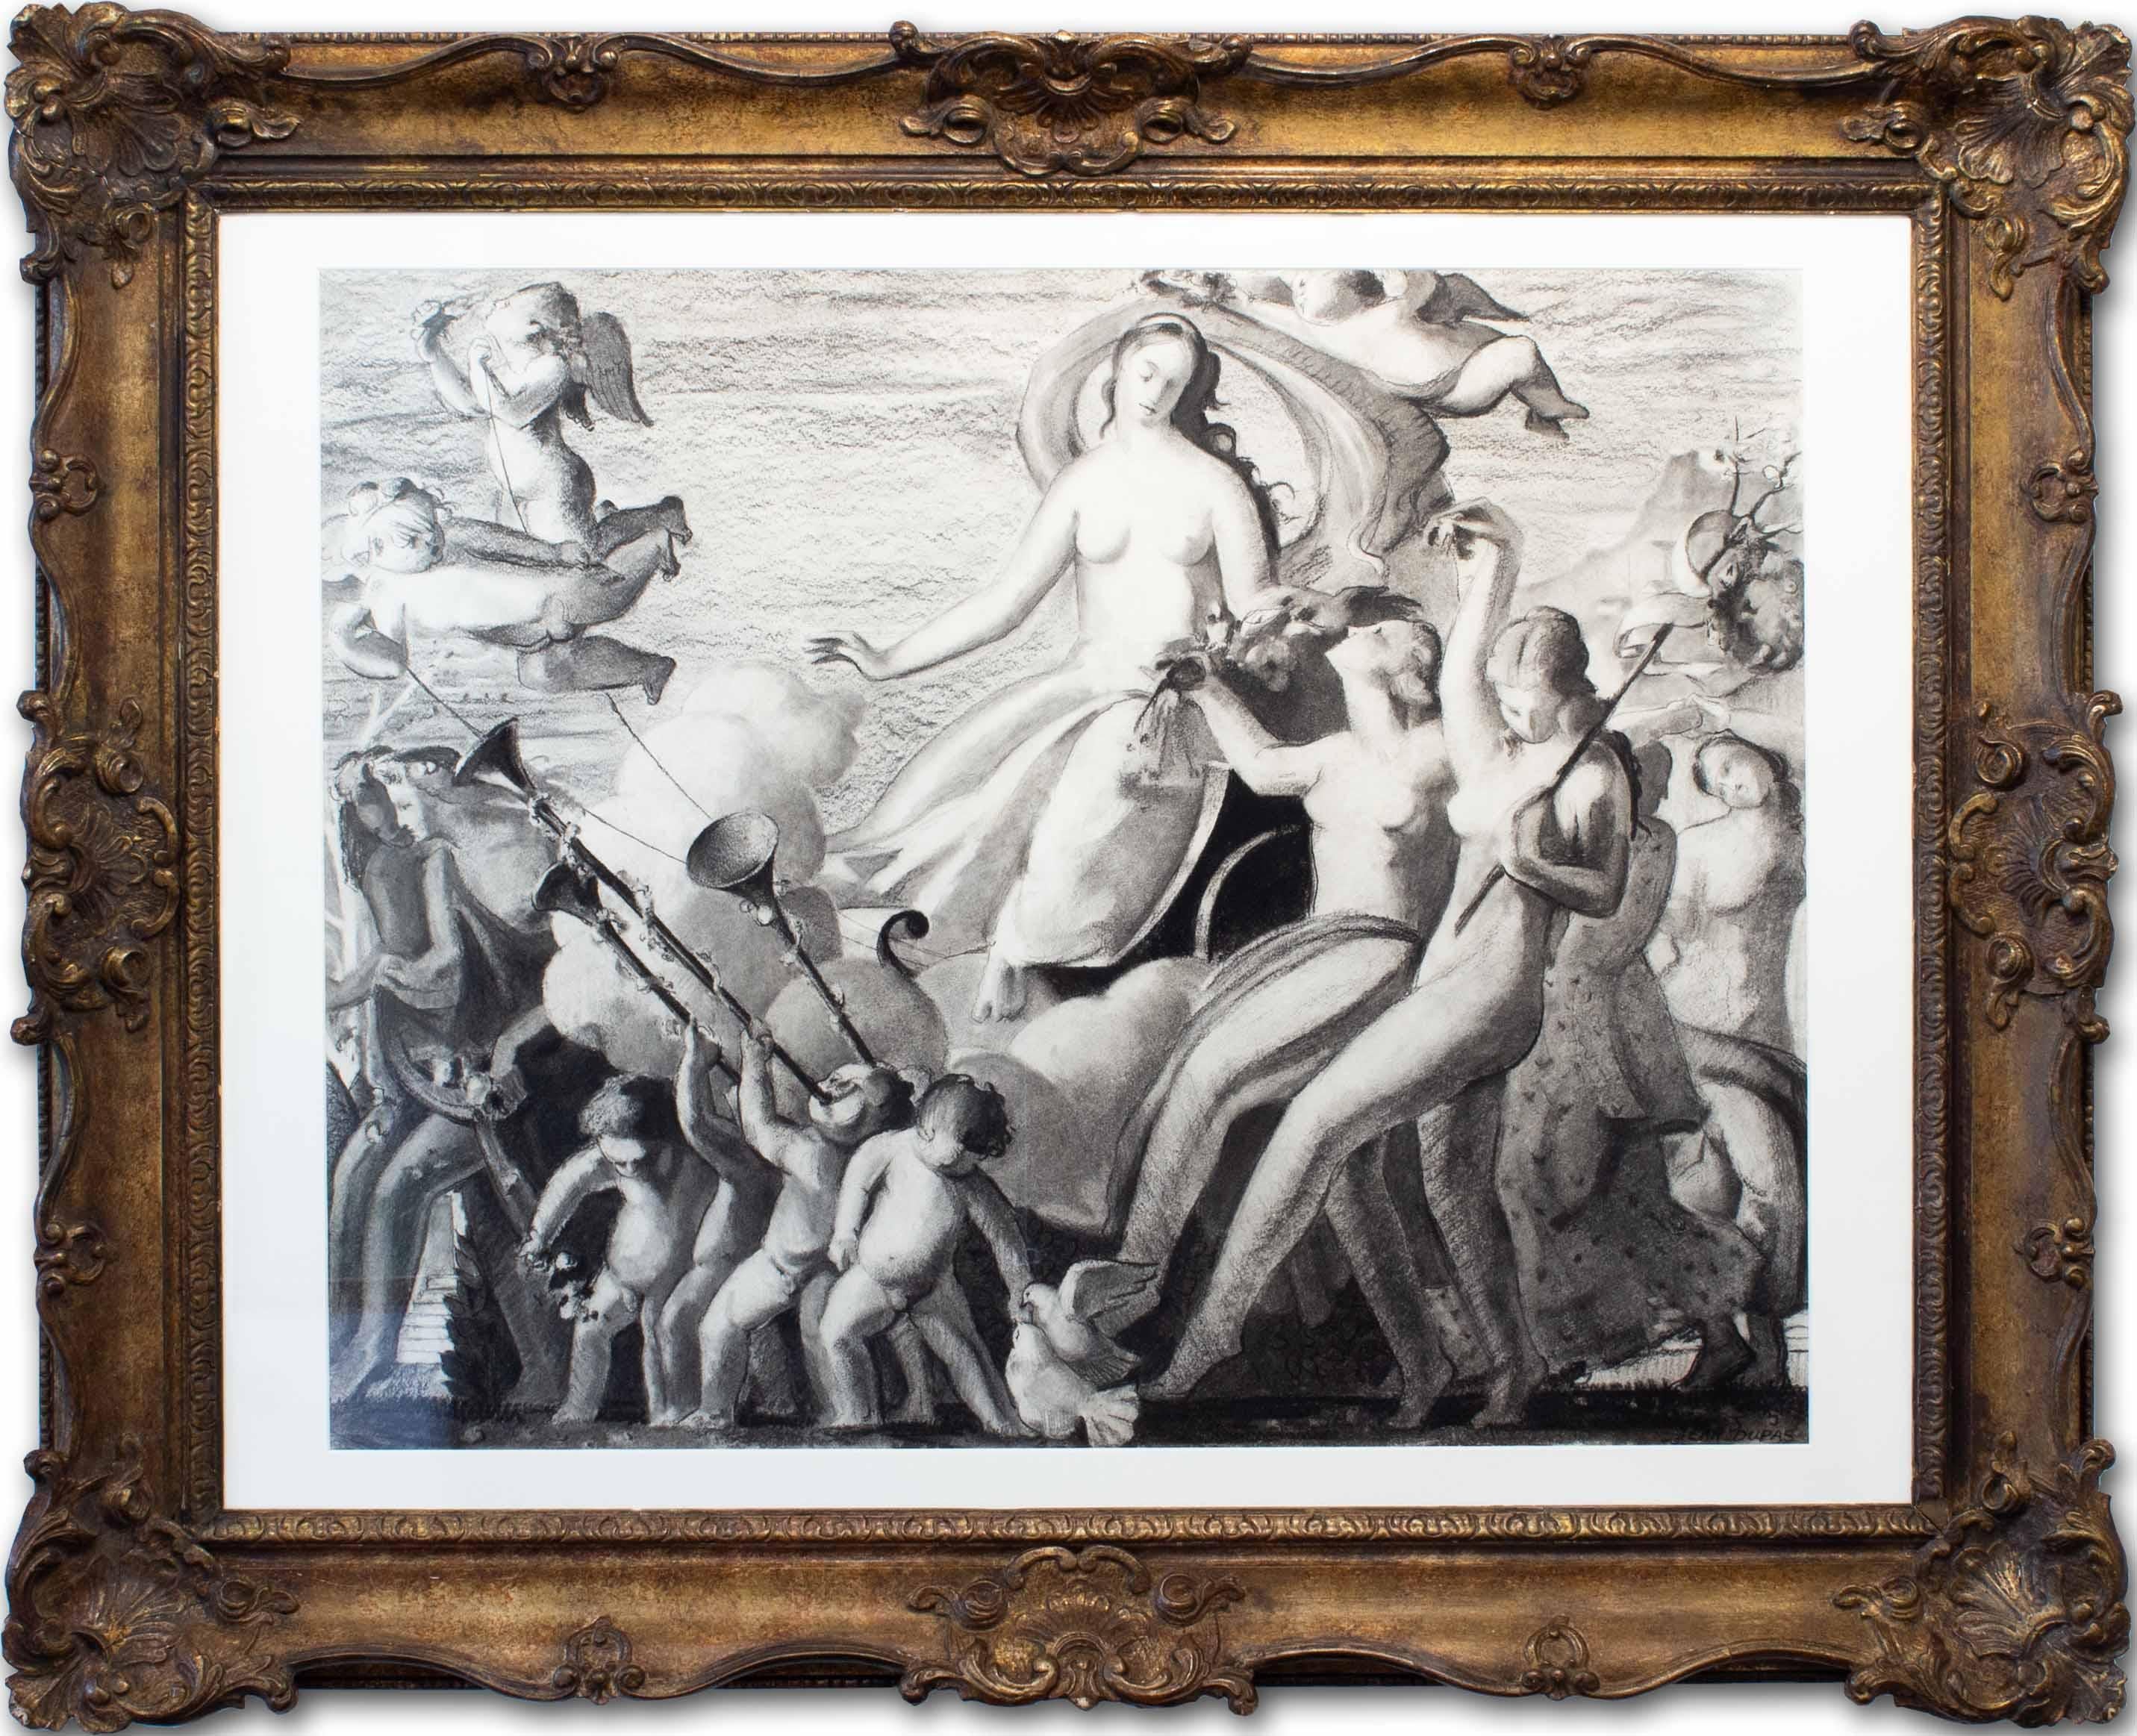 Kohlezeichnung im Art déco-Stil von Jean Dupas aus dem Triumph der Venus, 1933